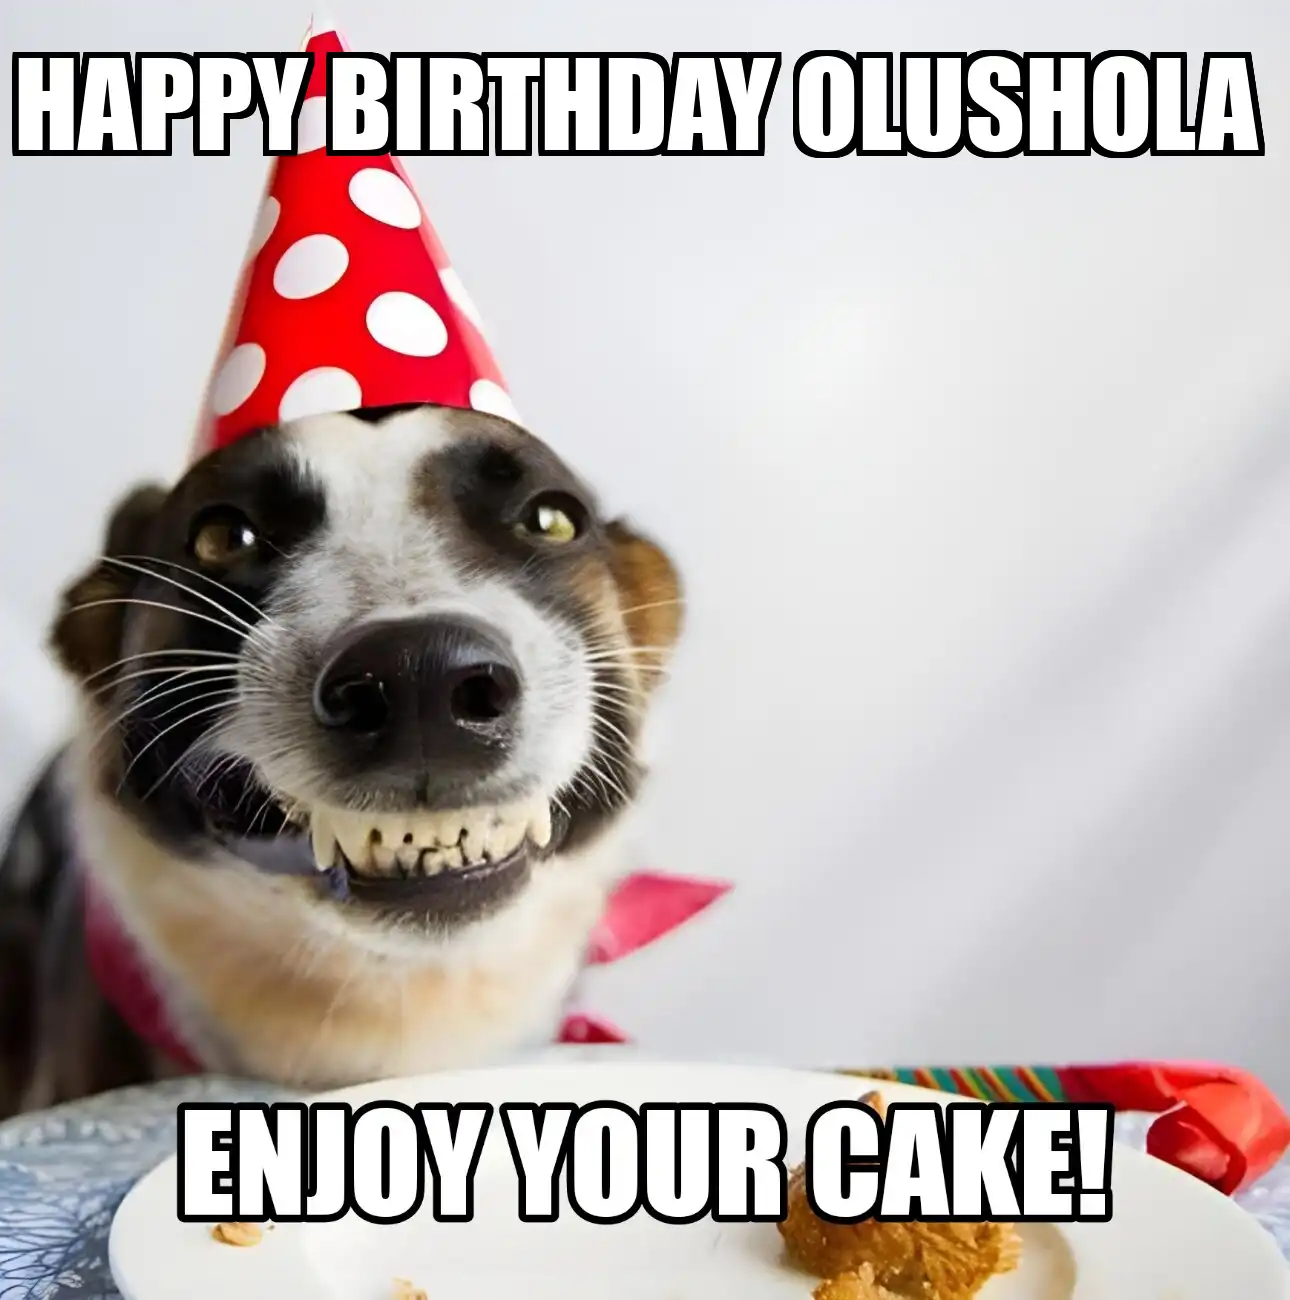 Happy Birthday Olushola Enjoy Your Cake Dog Meme